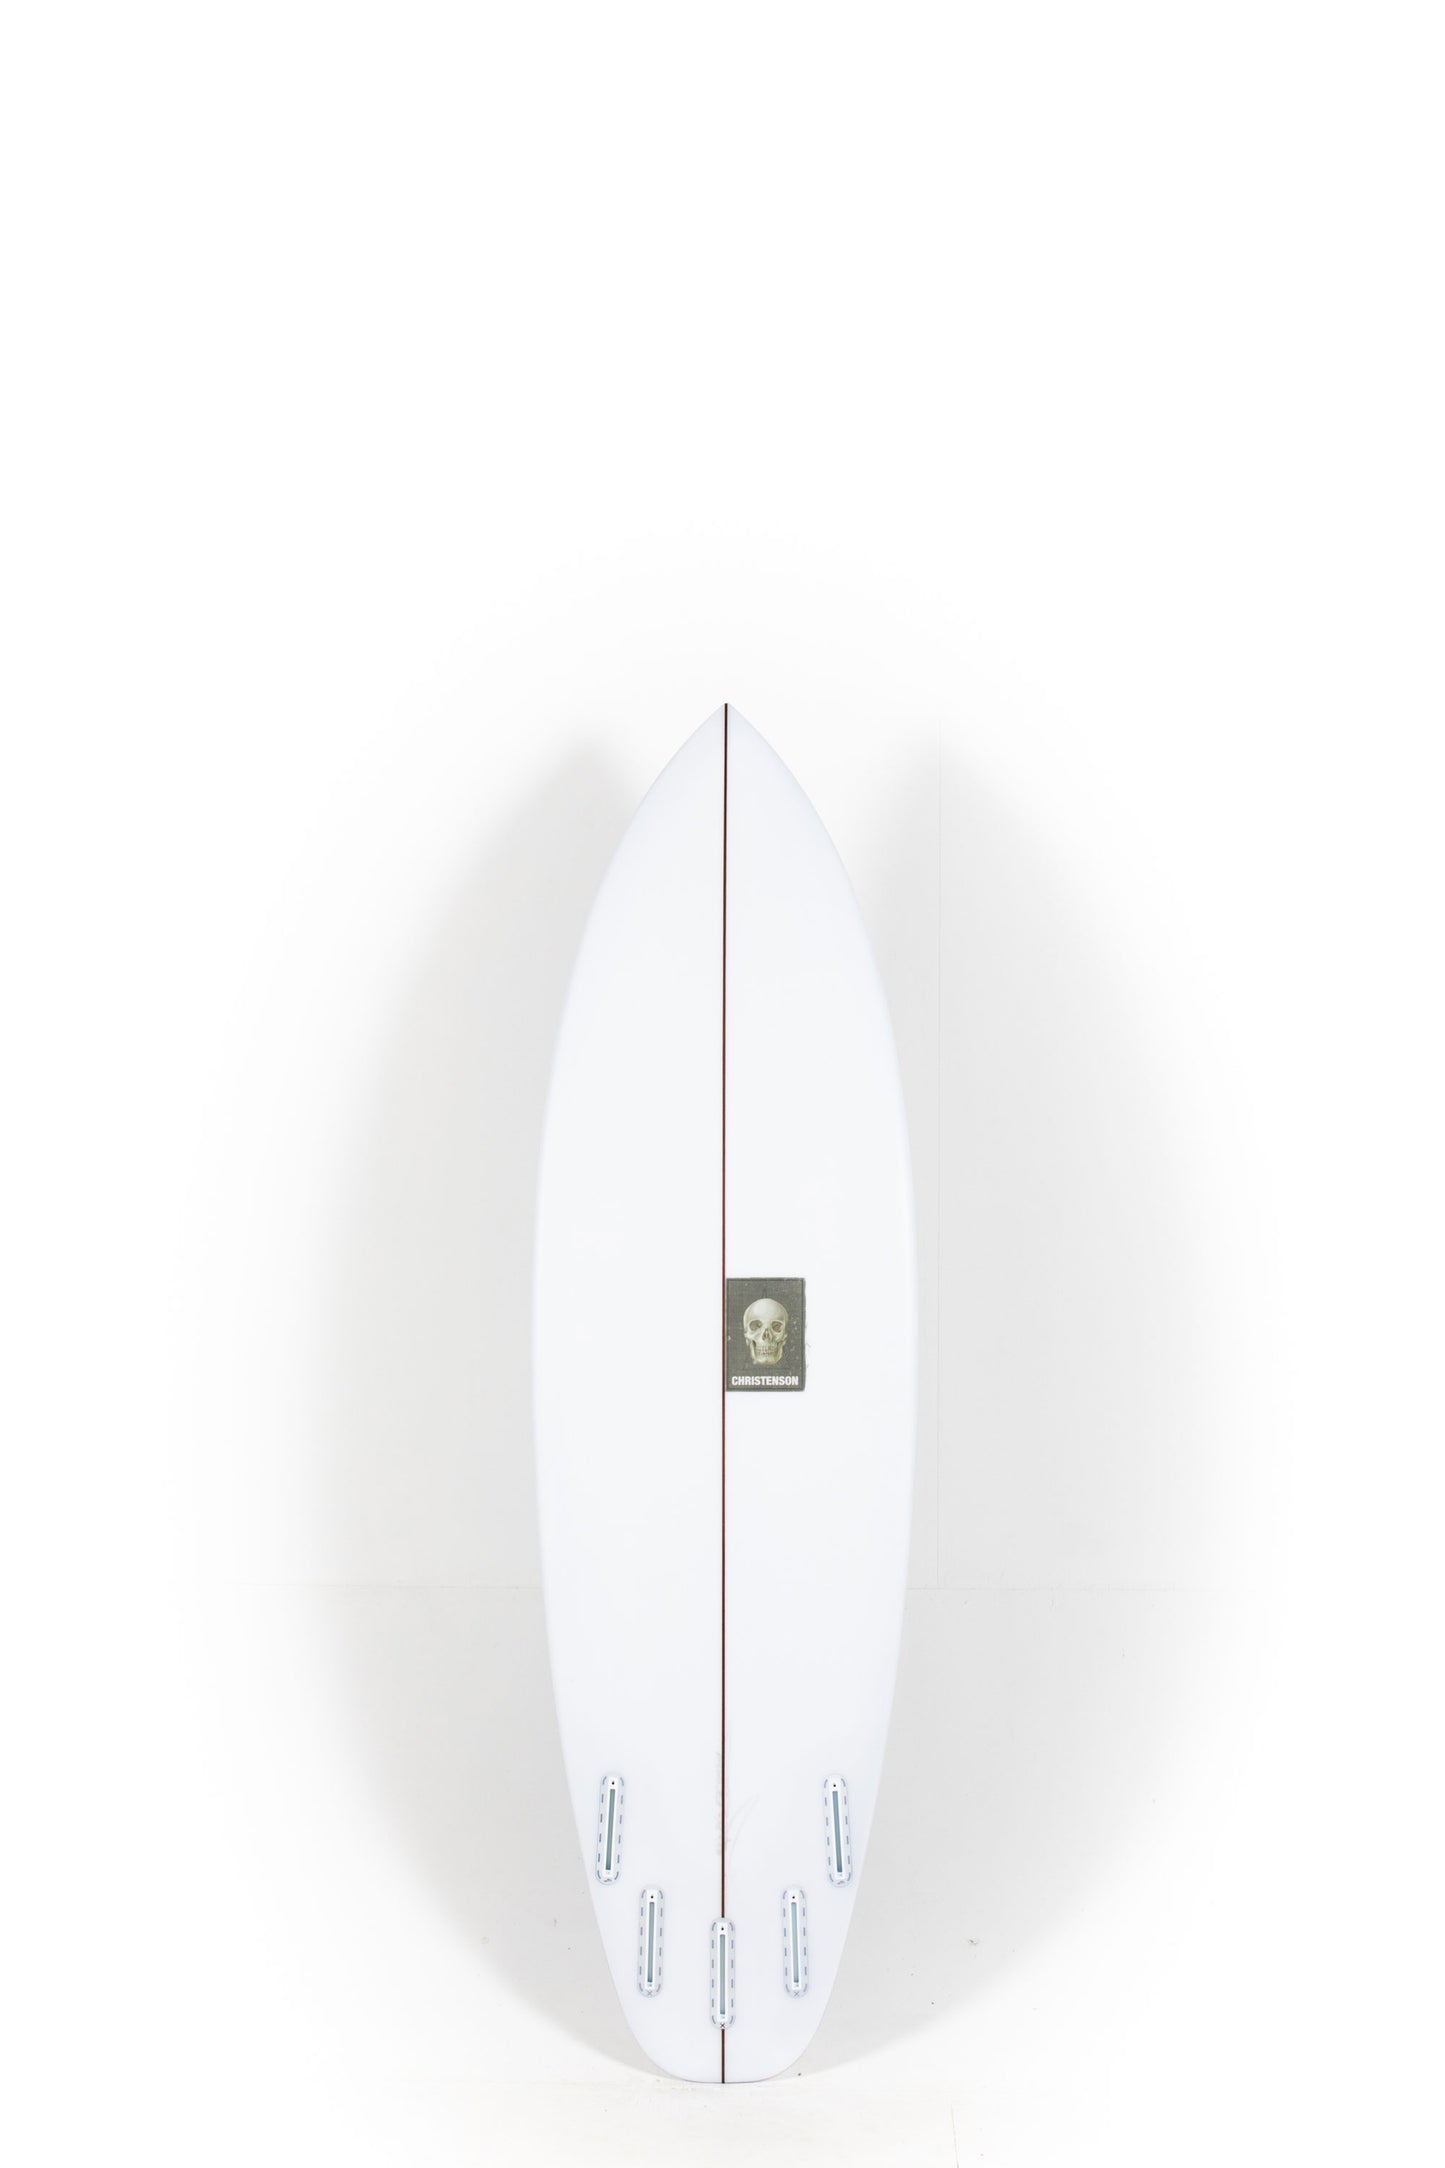 Pukas Surf Shop - Christenson Surfboard  - SURFER ROSA - 6'0” x 20 x 2 1/2 - CX05001